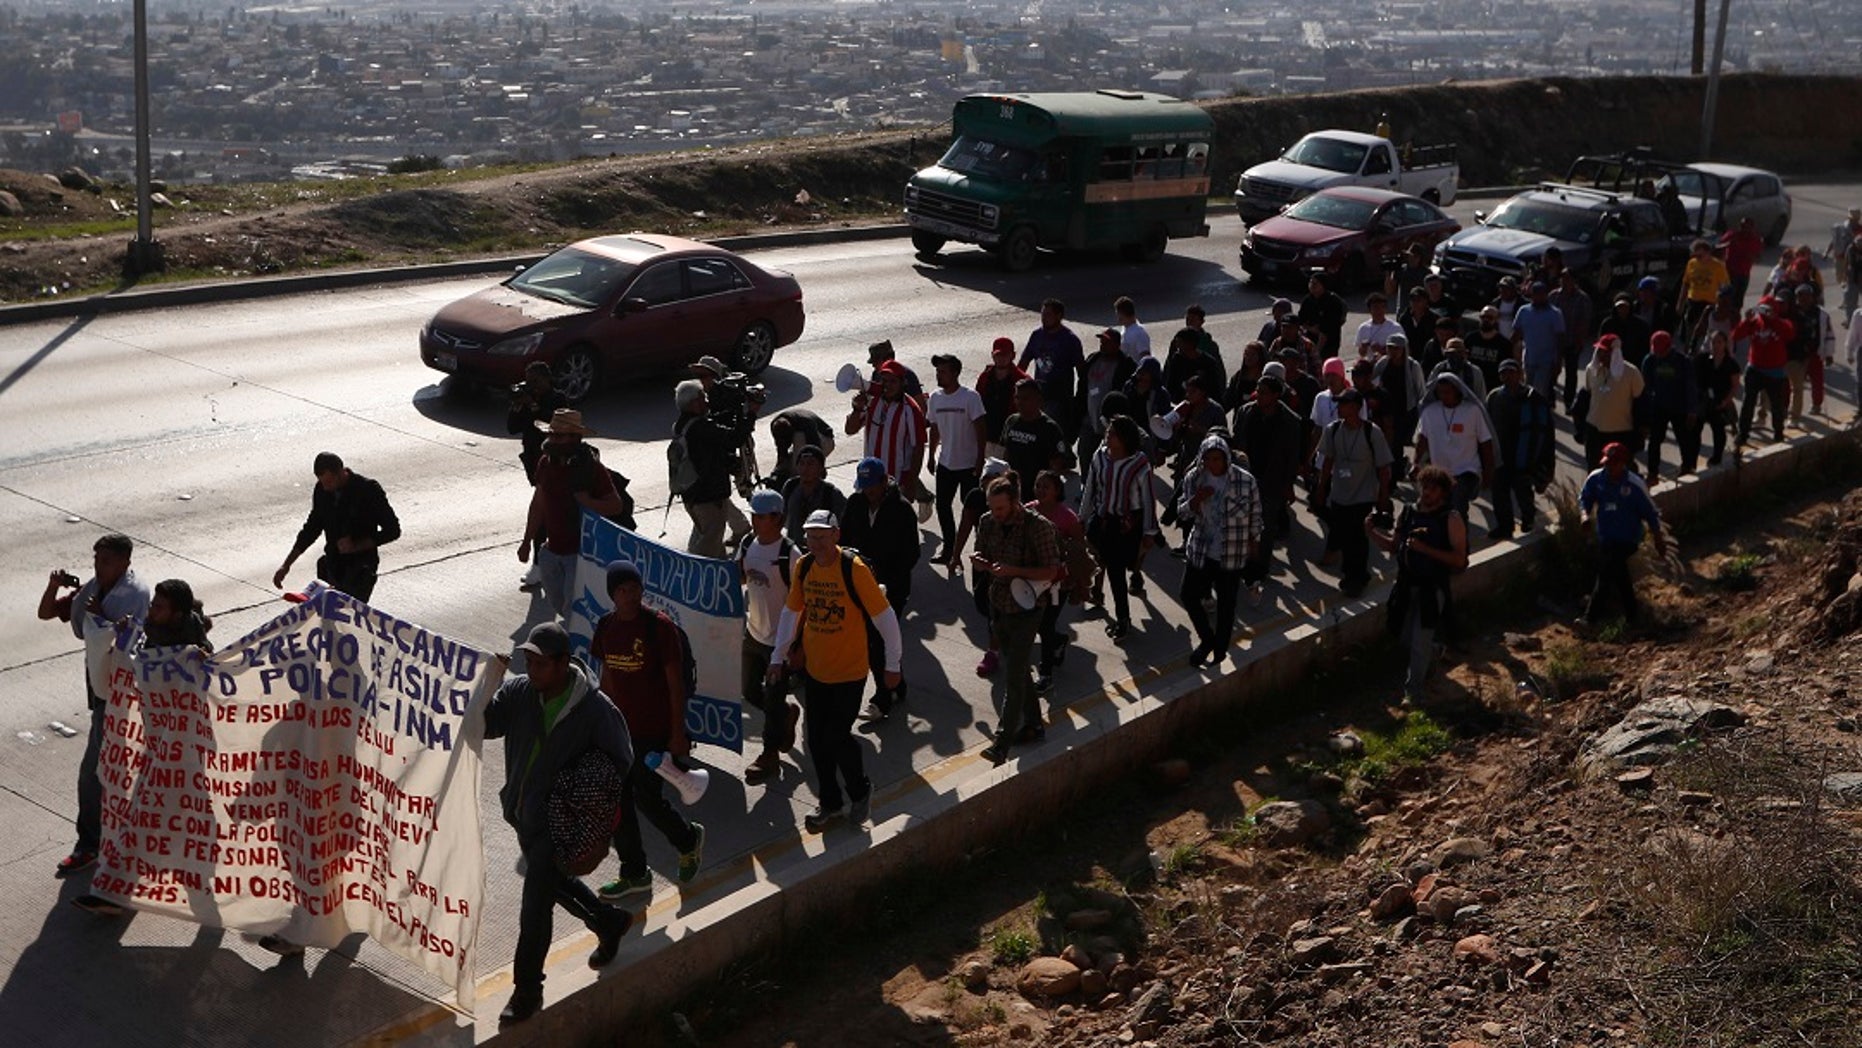 Central American migrants march to the U.S. consulate in Tijuana, Mexico, Tuesday, Dec. 11, 2018. (AP Photo/Moises Castillo)